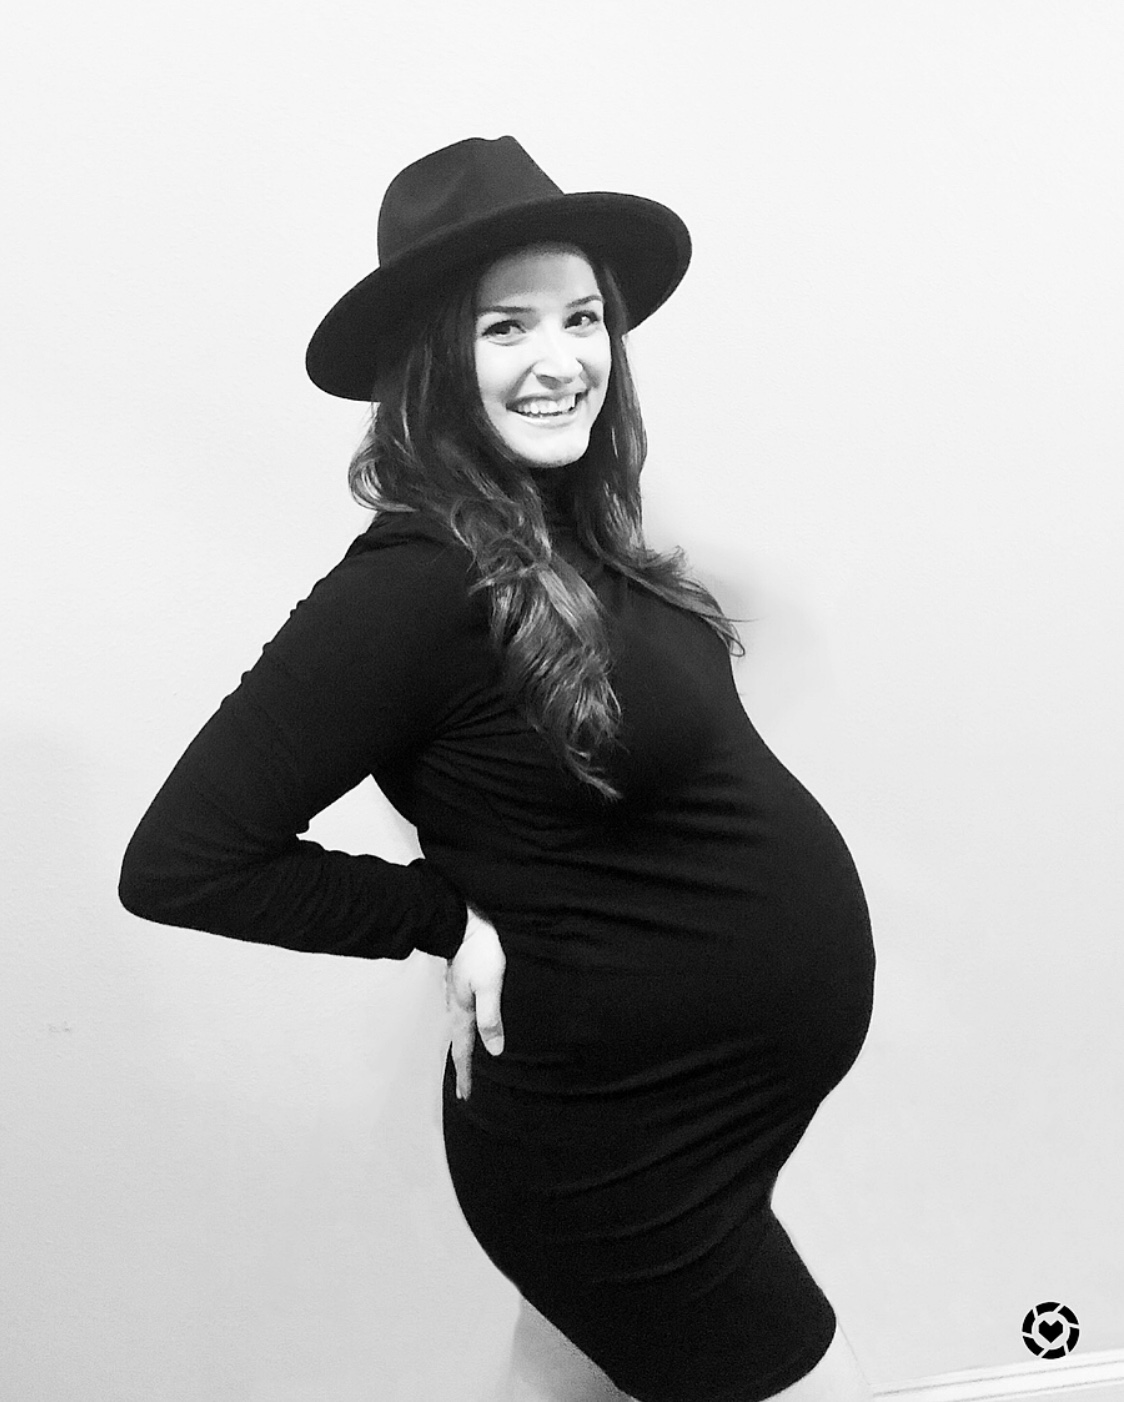 Baby Steps: 38 Week Pregnancy Update